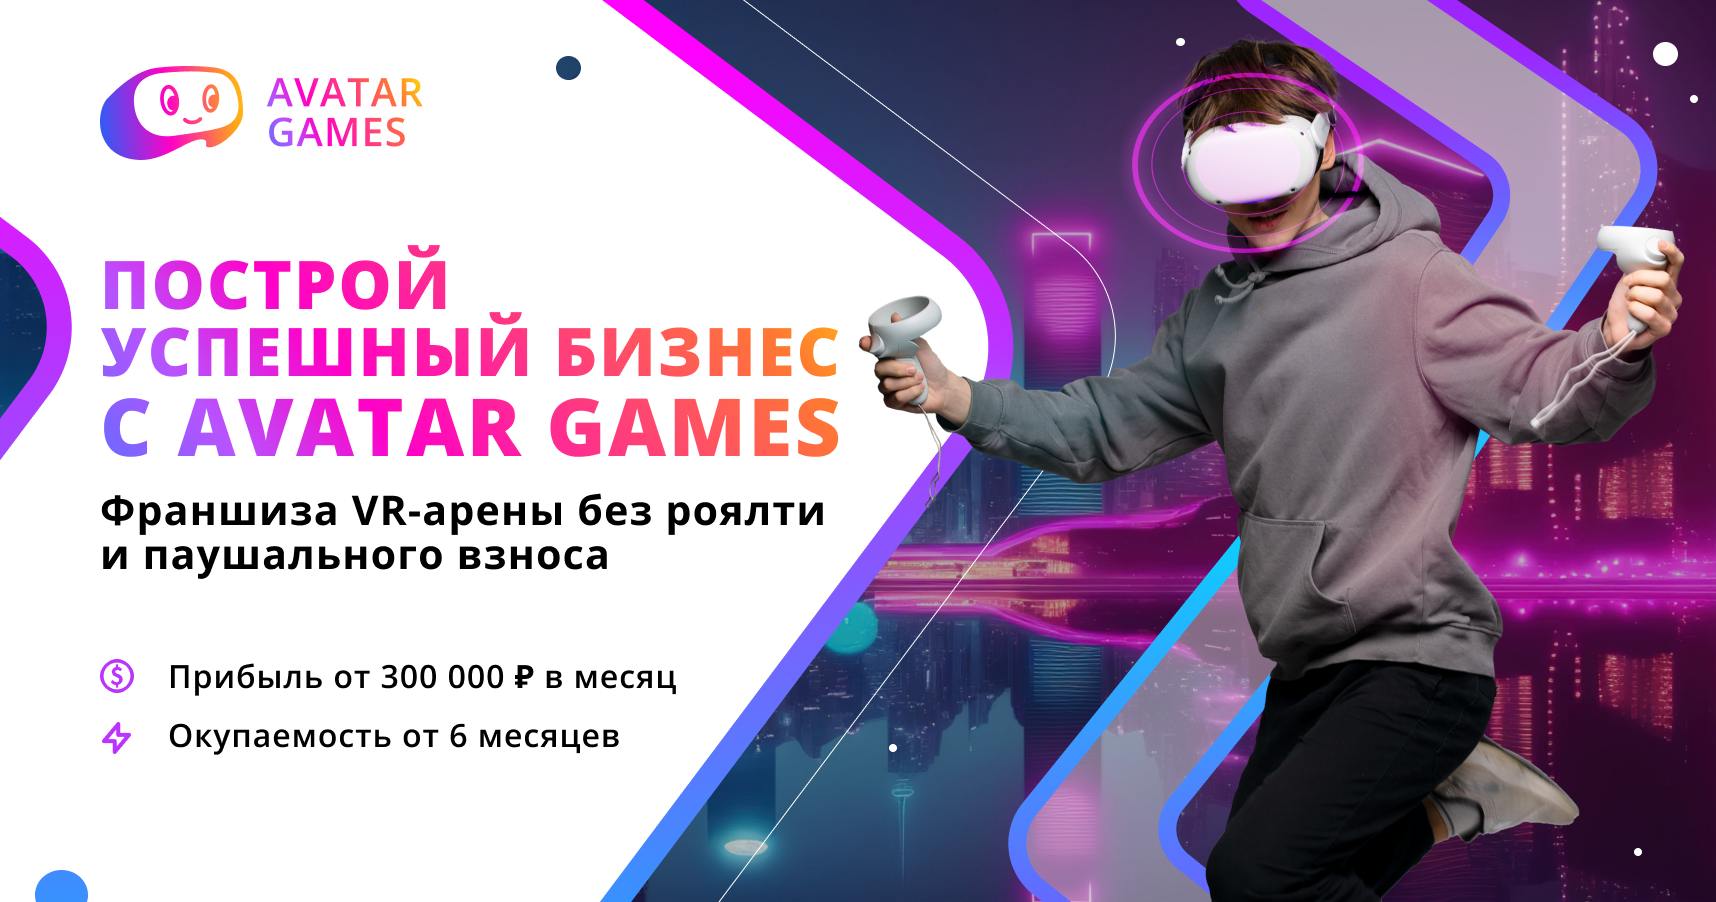 Международная франшиза VR-арены AVATAR GAMES